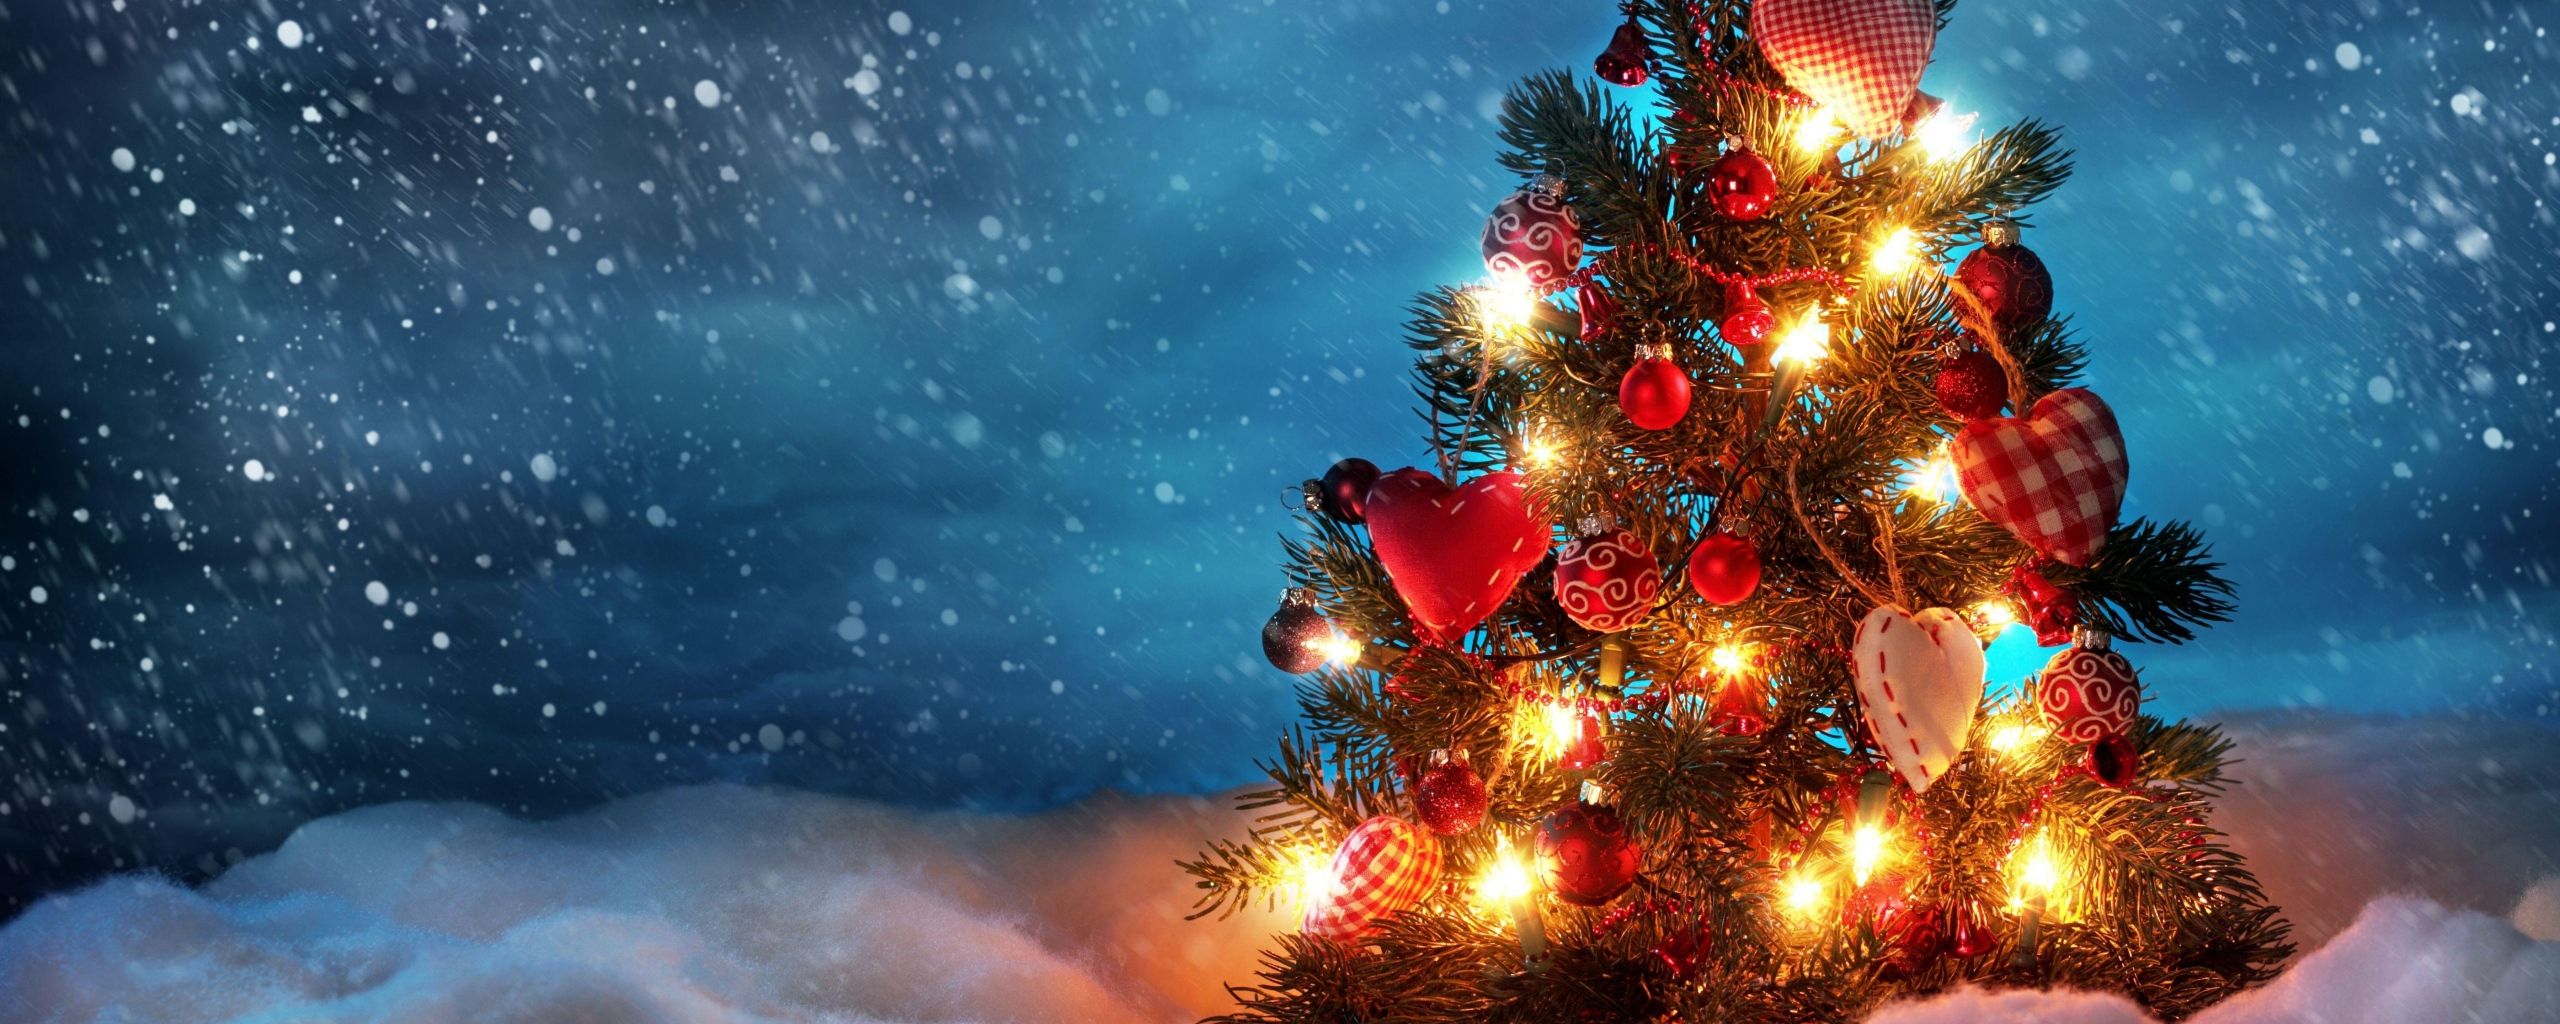 monitor dual de navidad fondo de pantalla,árbol de navidad,árbol,decoración navideña,navidad,cielo